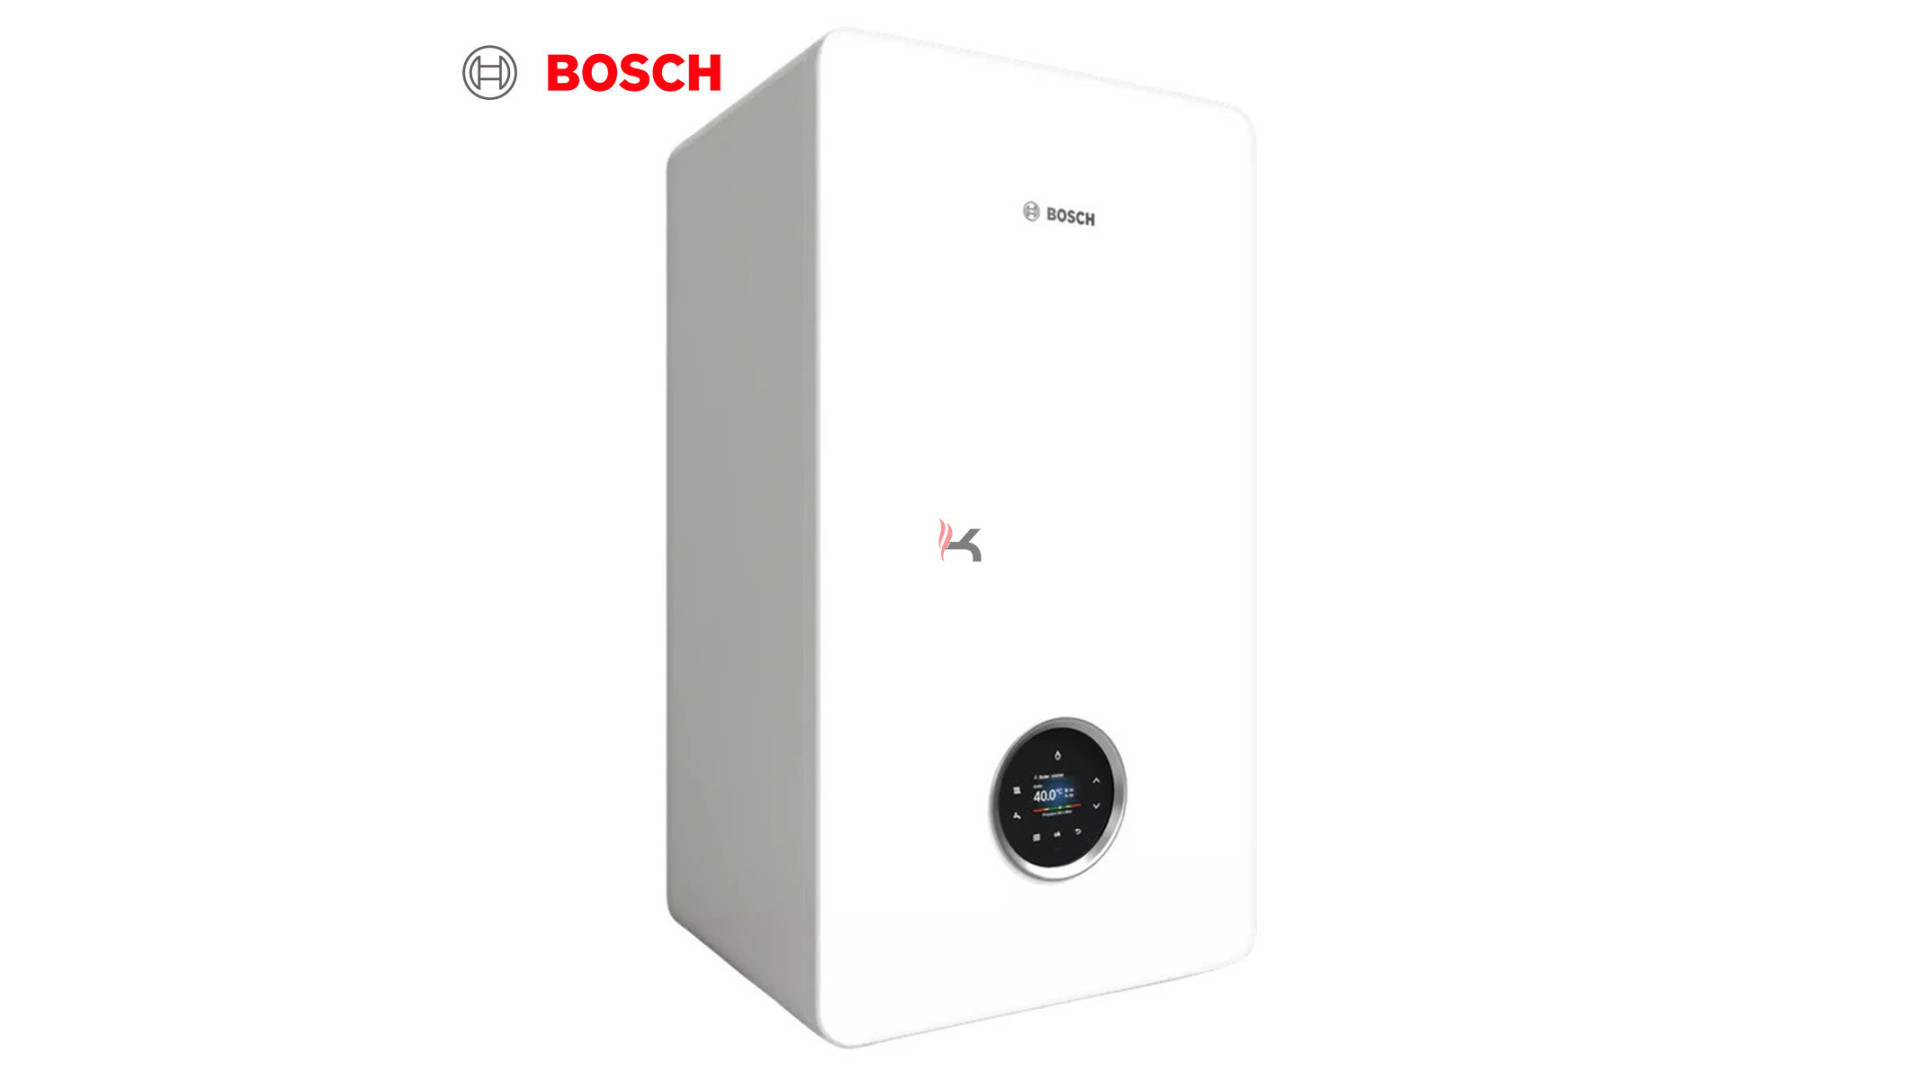 Bosch 7736902853.jpg